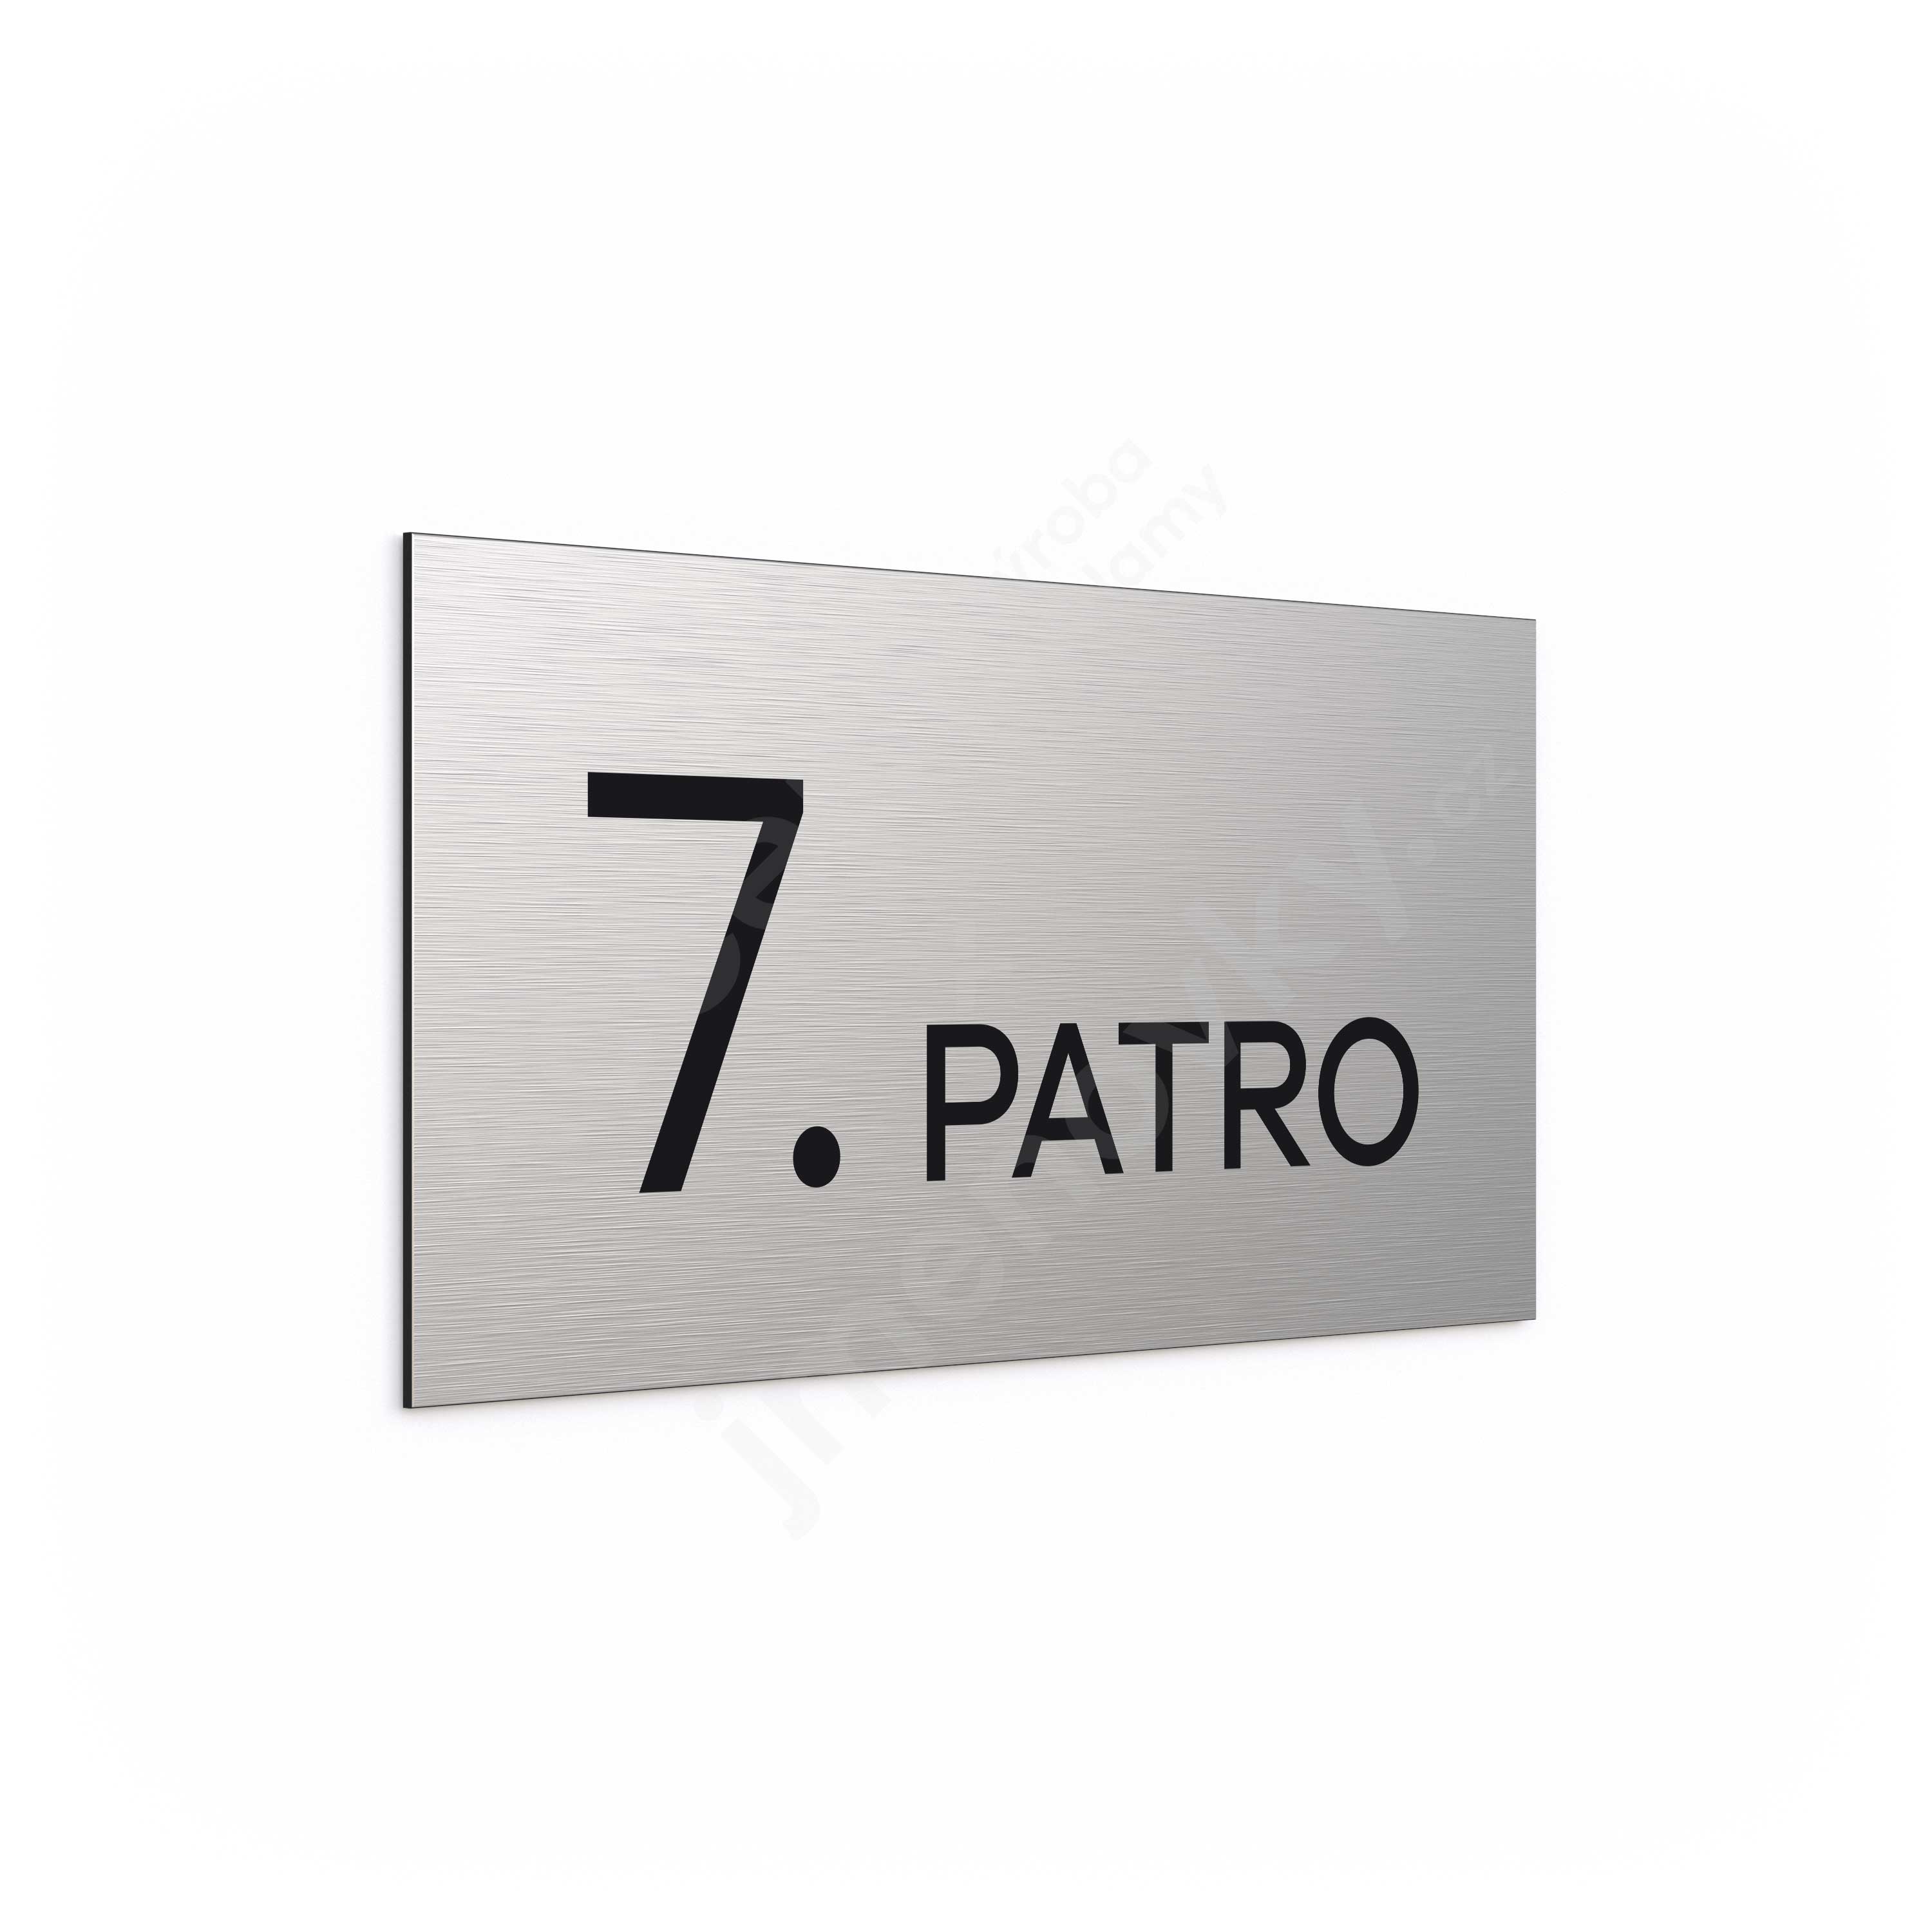 Označení podlaží "7. PATRO" - stříbrná tabulka - černý popis